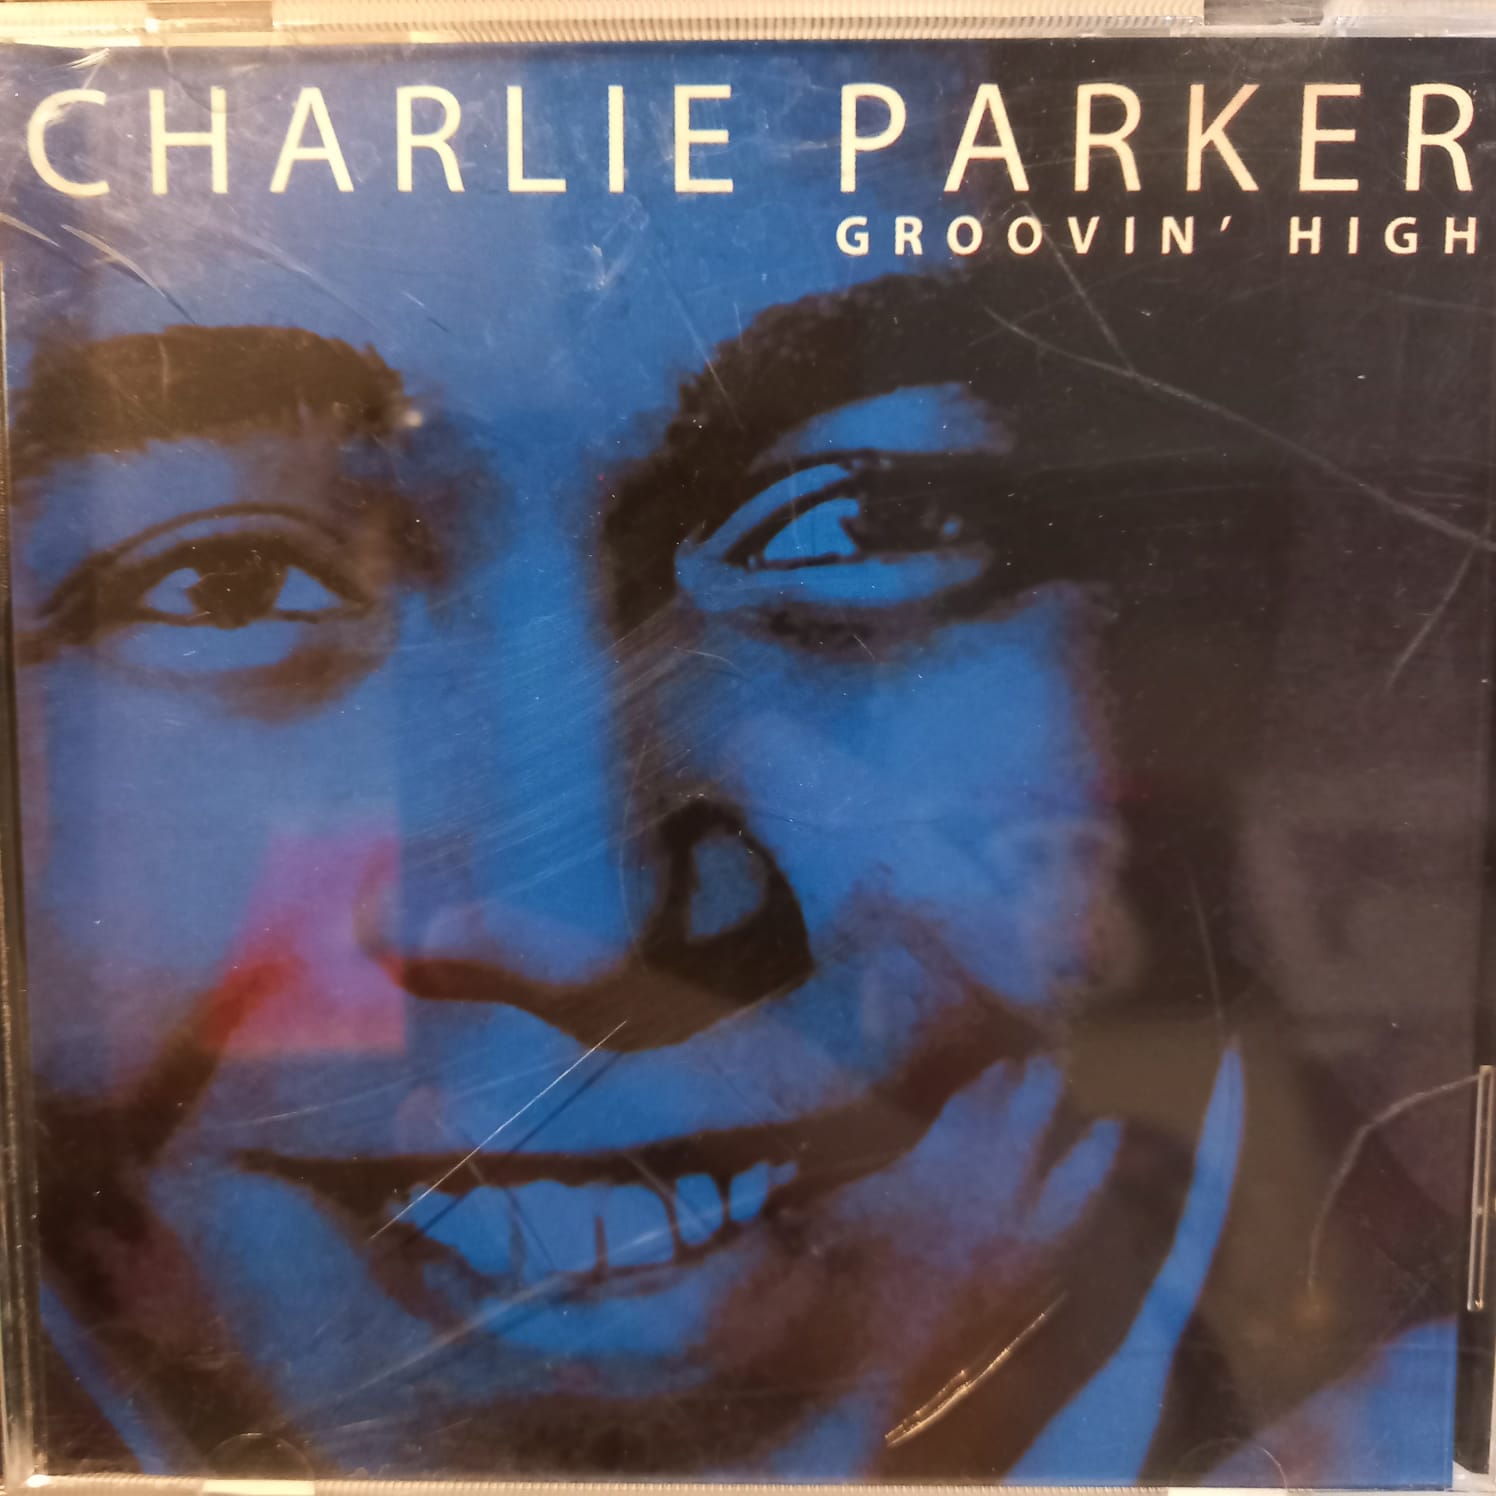 CHARLIE PARKER – GROOVIN’ HIGH